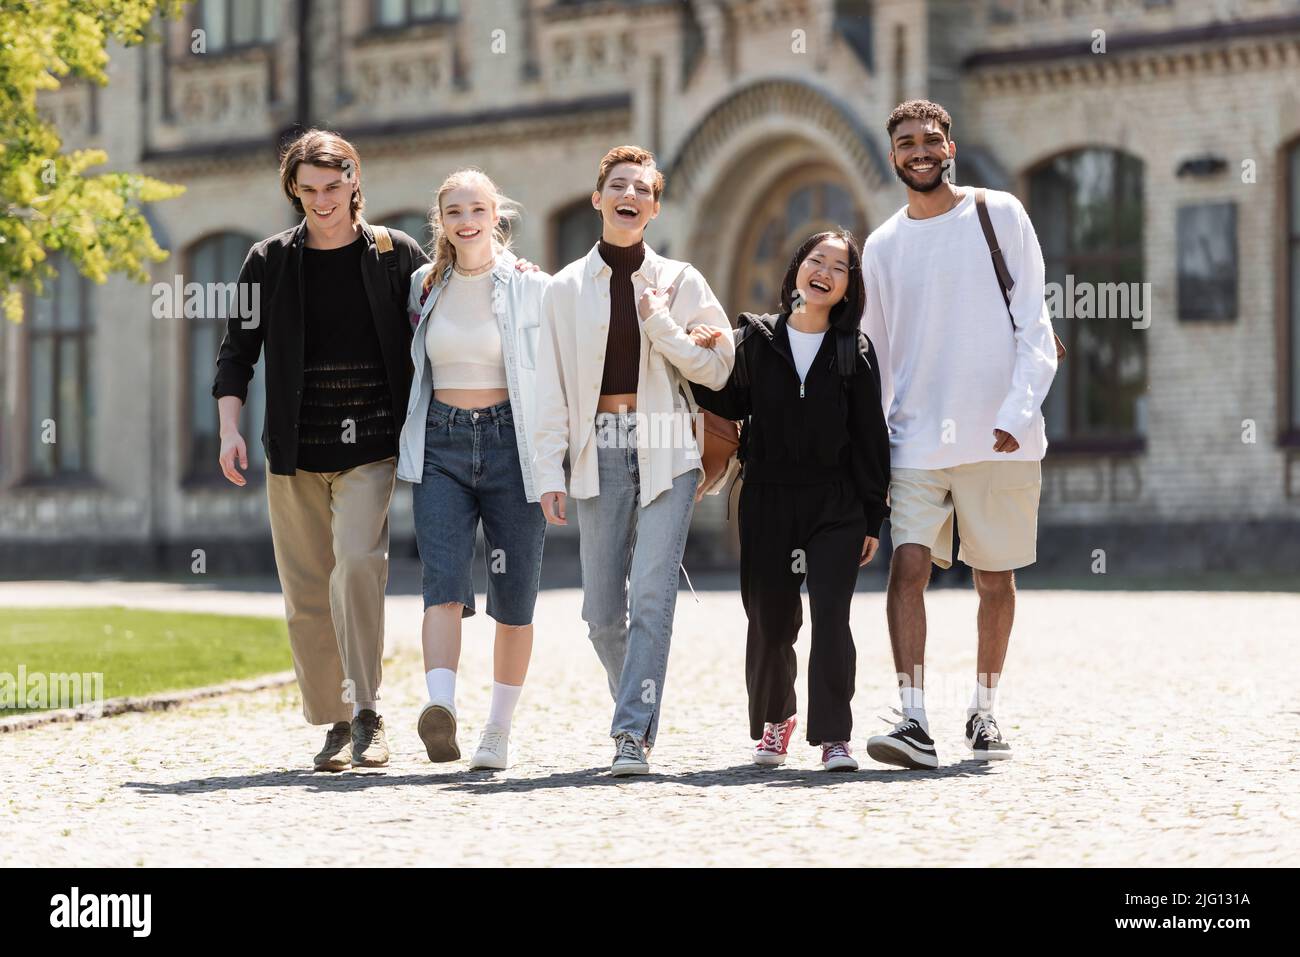 Giovani studenti multietnici che camminano e guardano la macchina fotografica vicino all'università all'aperto Foto Stock